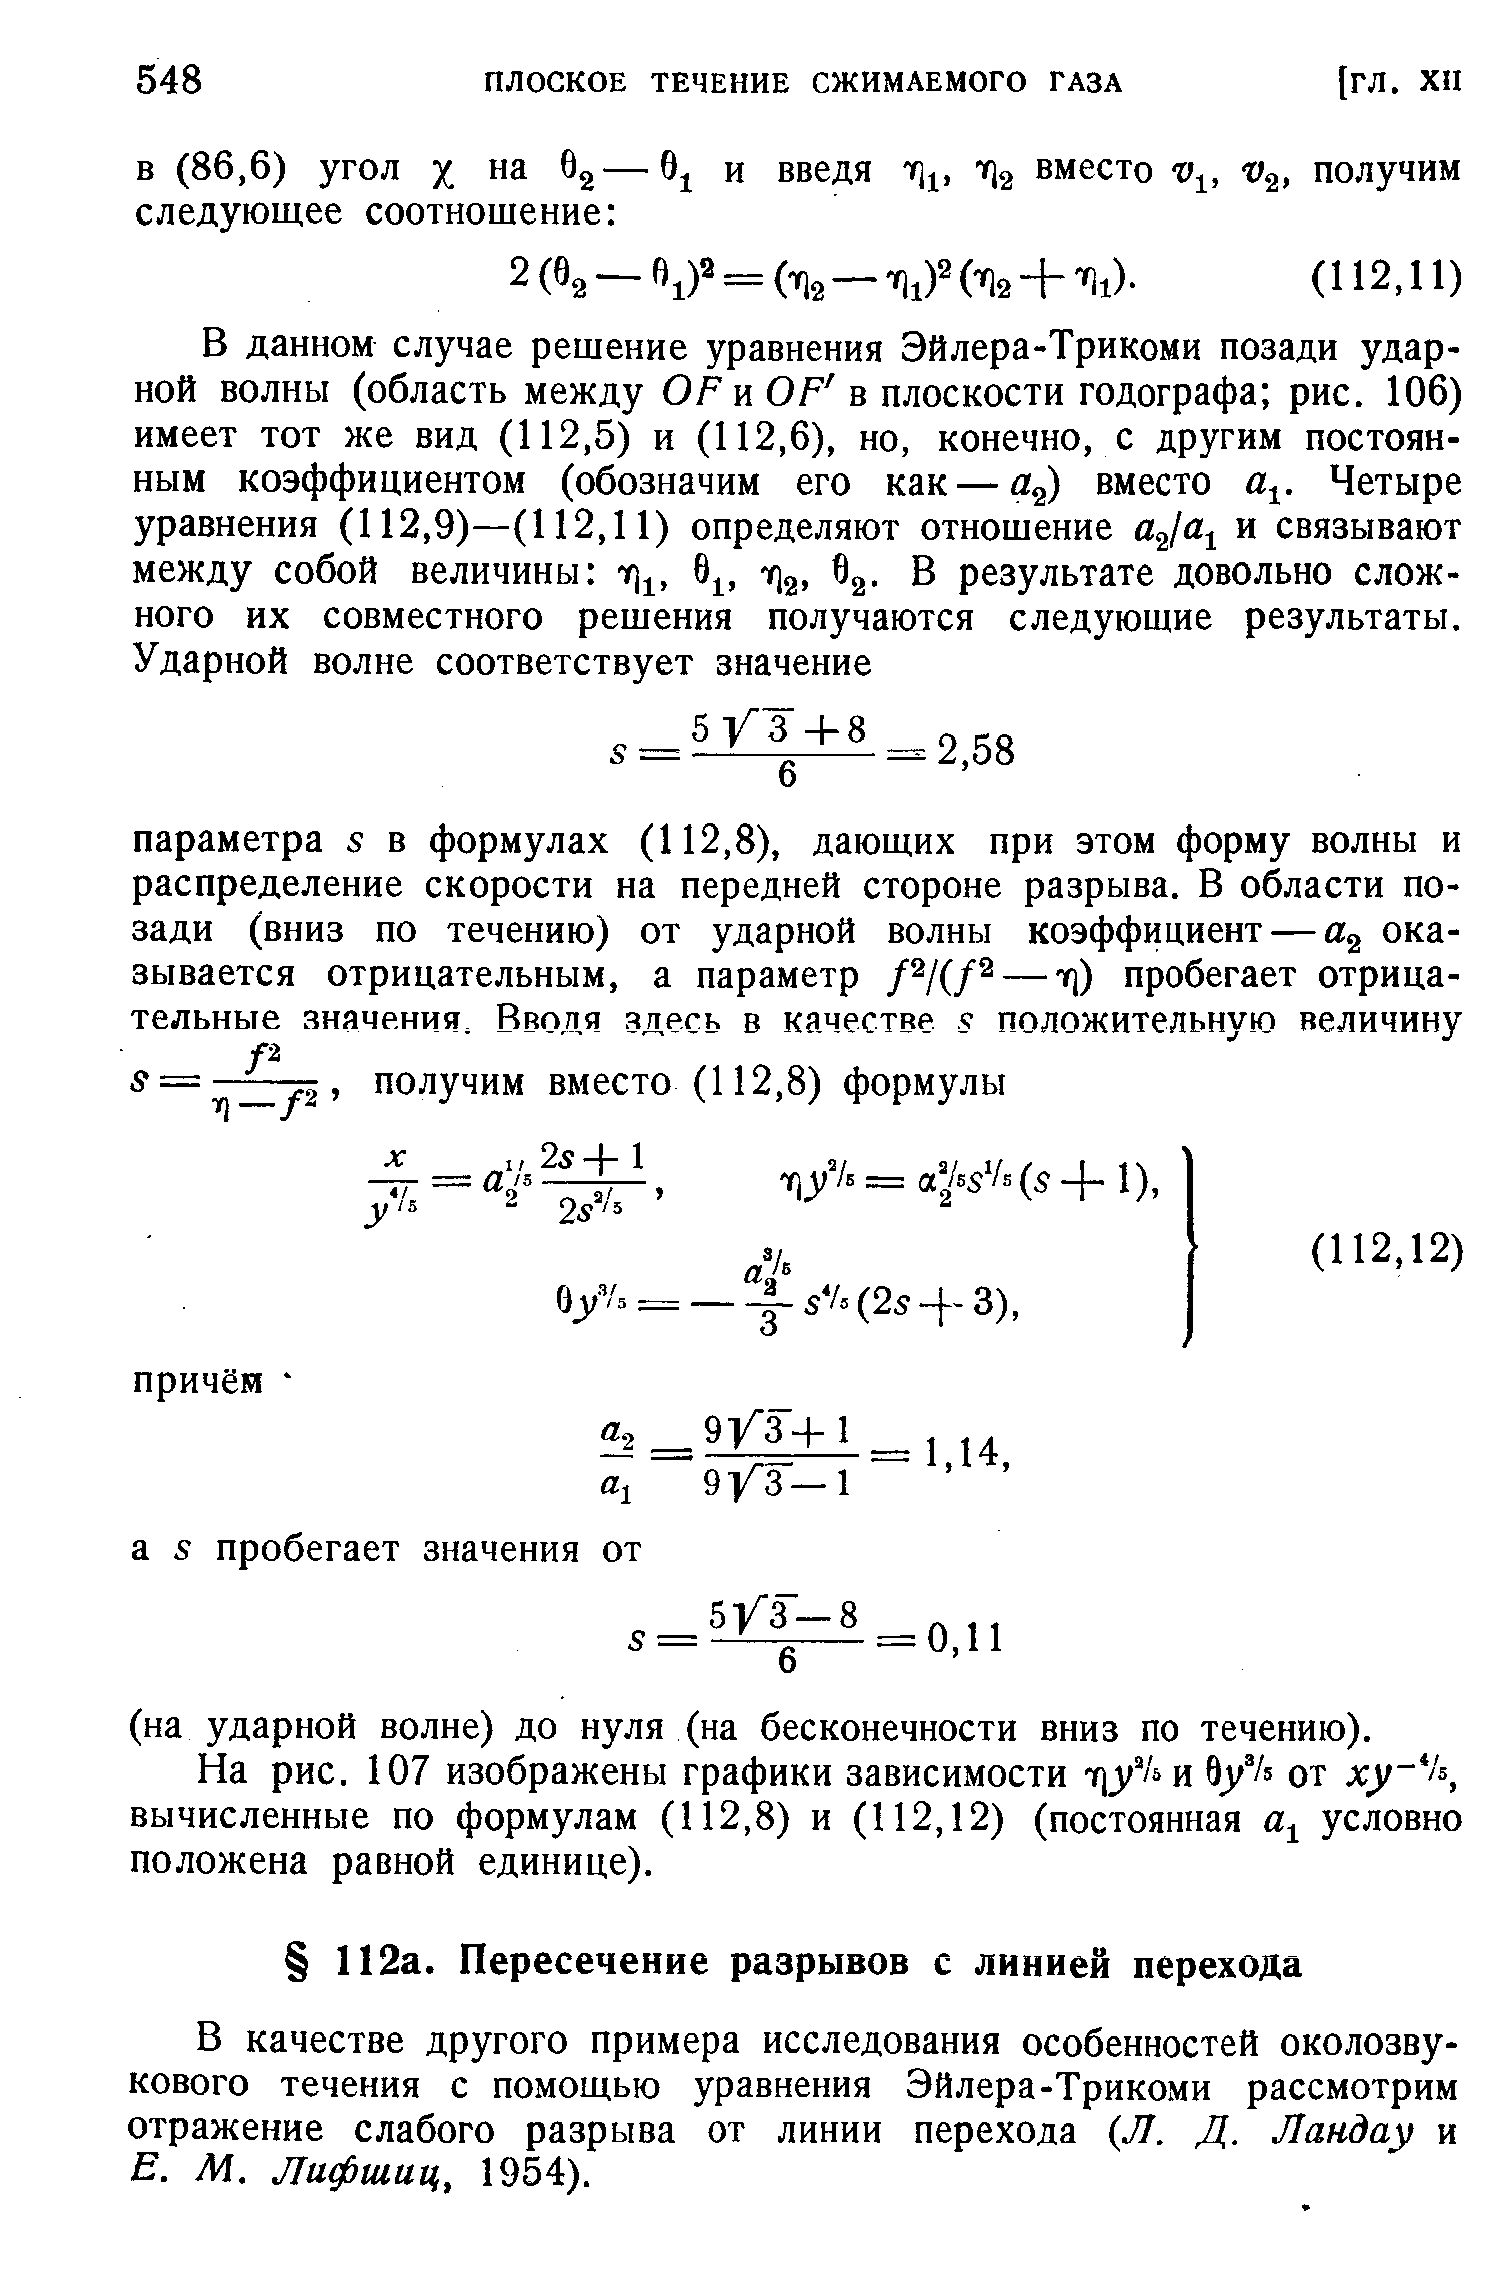 В качестве другого примера исследования особенностей околозвукового течения с помощью уравнения Эйлера-Трикоми рассмотрим отражение слабого разрыва от линии перехода Л. Д. Ландау и Е. М. Лифшиц, 1954).
